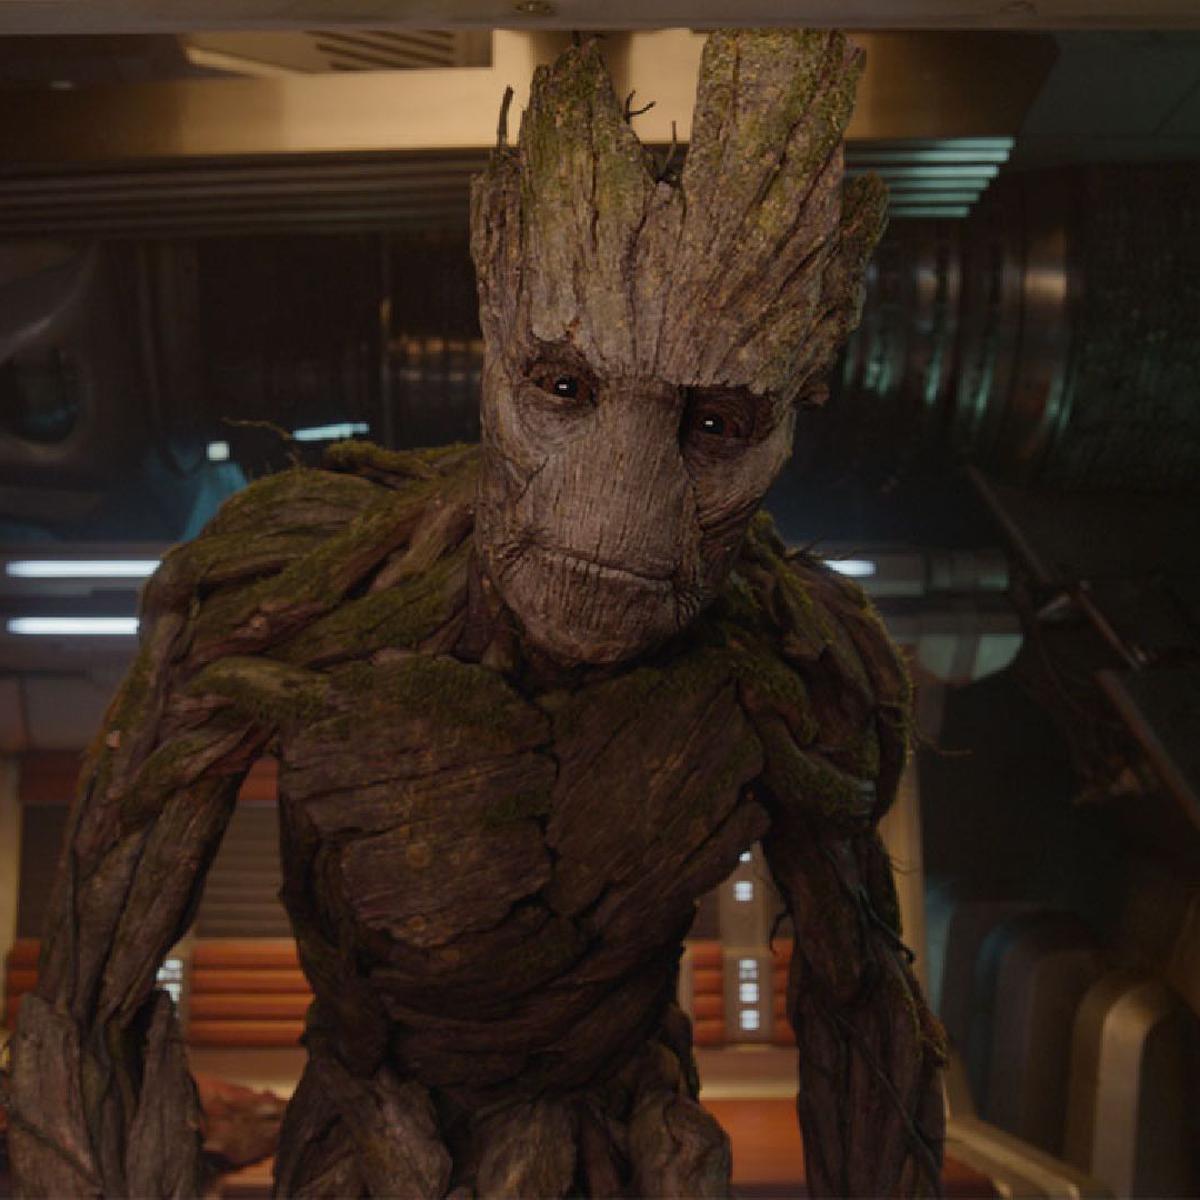 El verdadero significado de ESA frase de Groot en 'Vengadores: Endgame